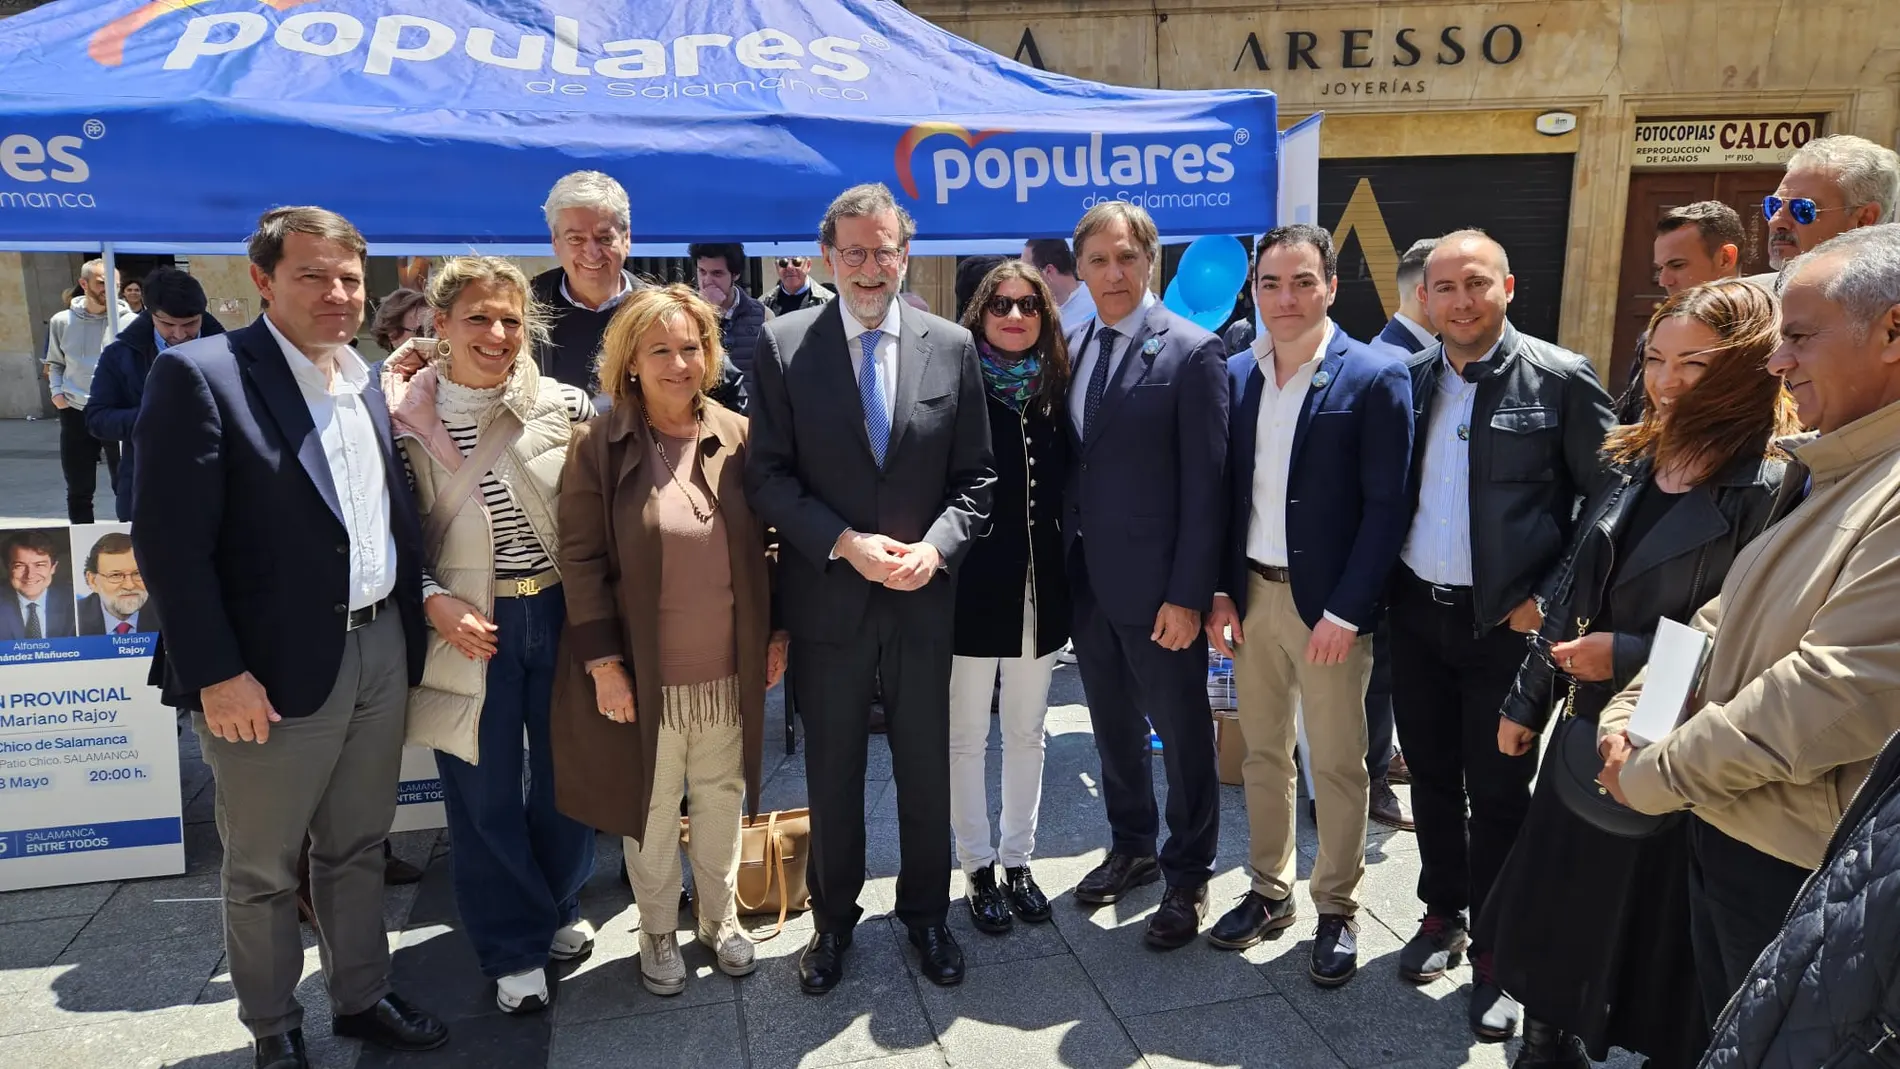 El presidente de Castilla y León, Alfonso Fernández Mañueco, acompañado de Mariano Rajoy y García Carbayo visitan la carpa del PP en Salamanca